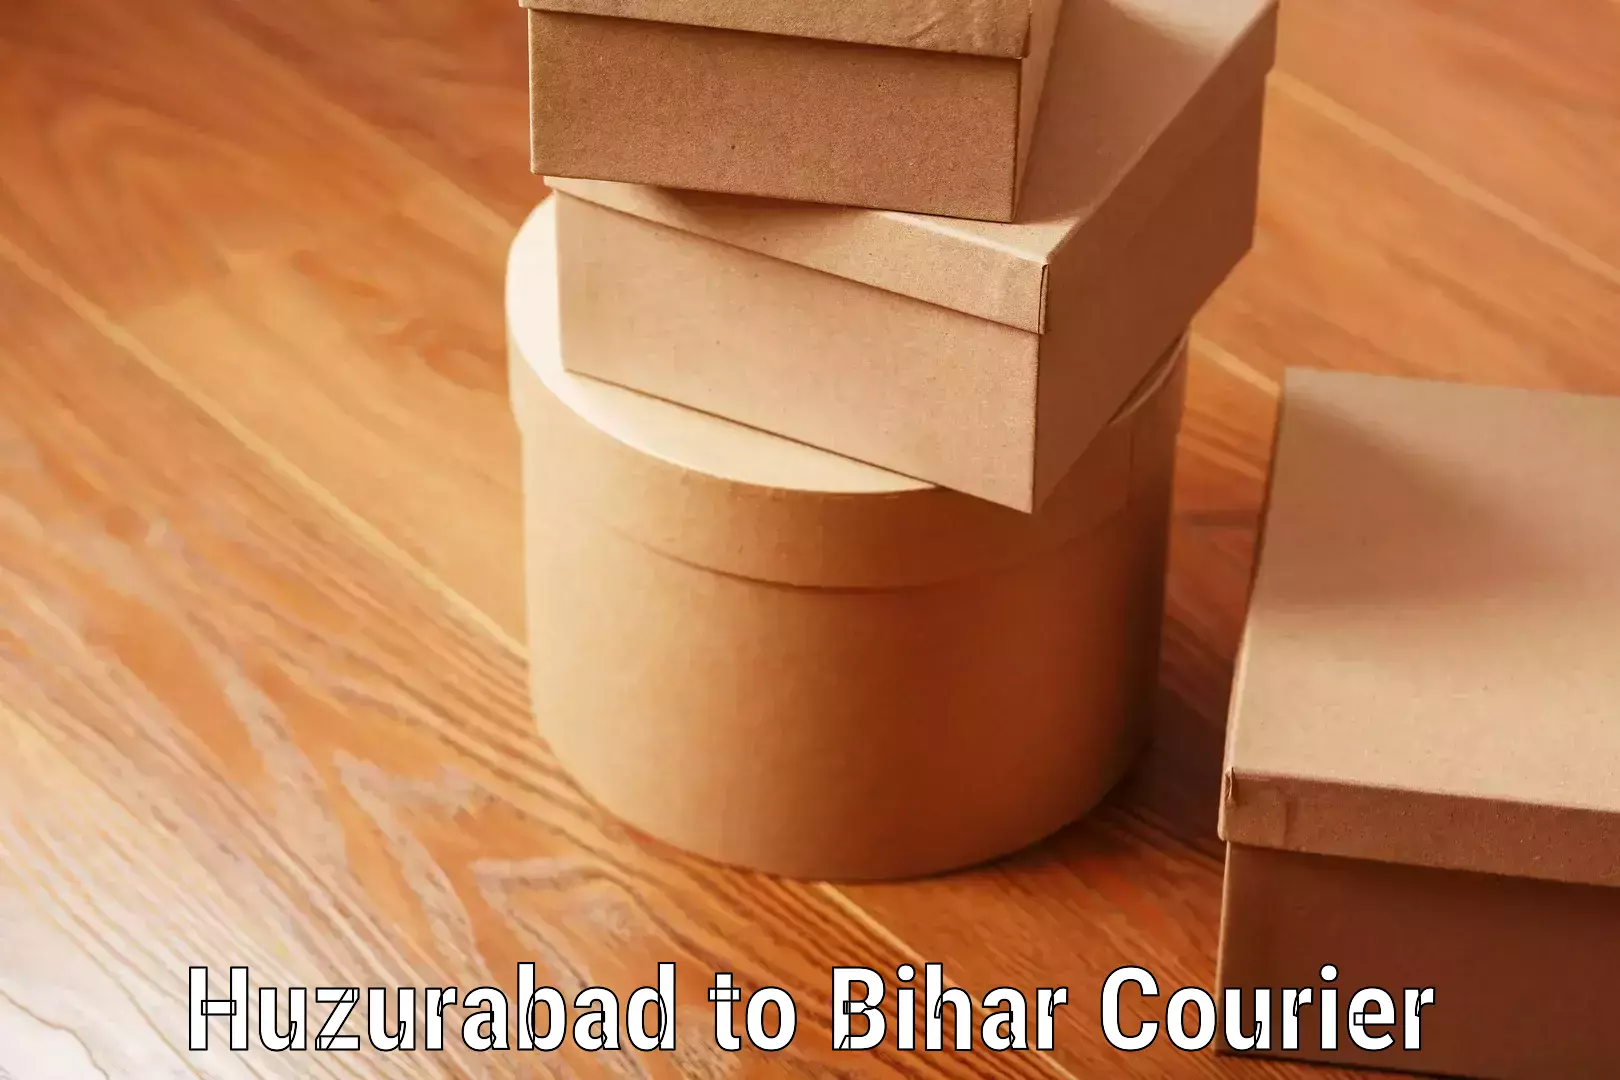 Baggage delivery scheduling in Huzurabad to Bihar